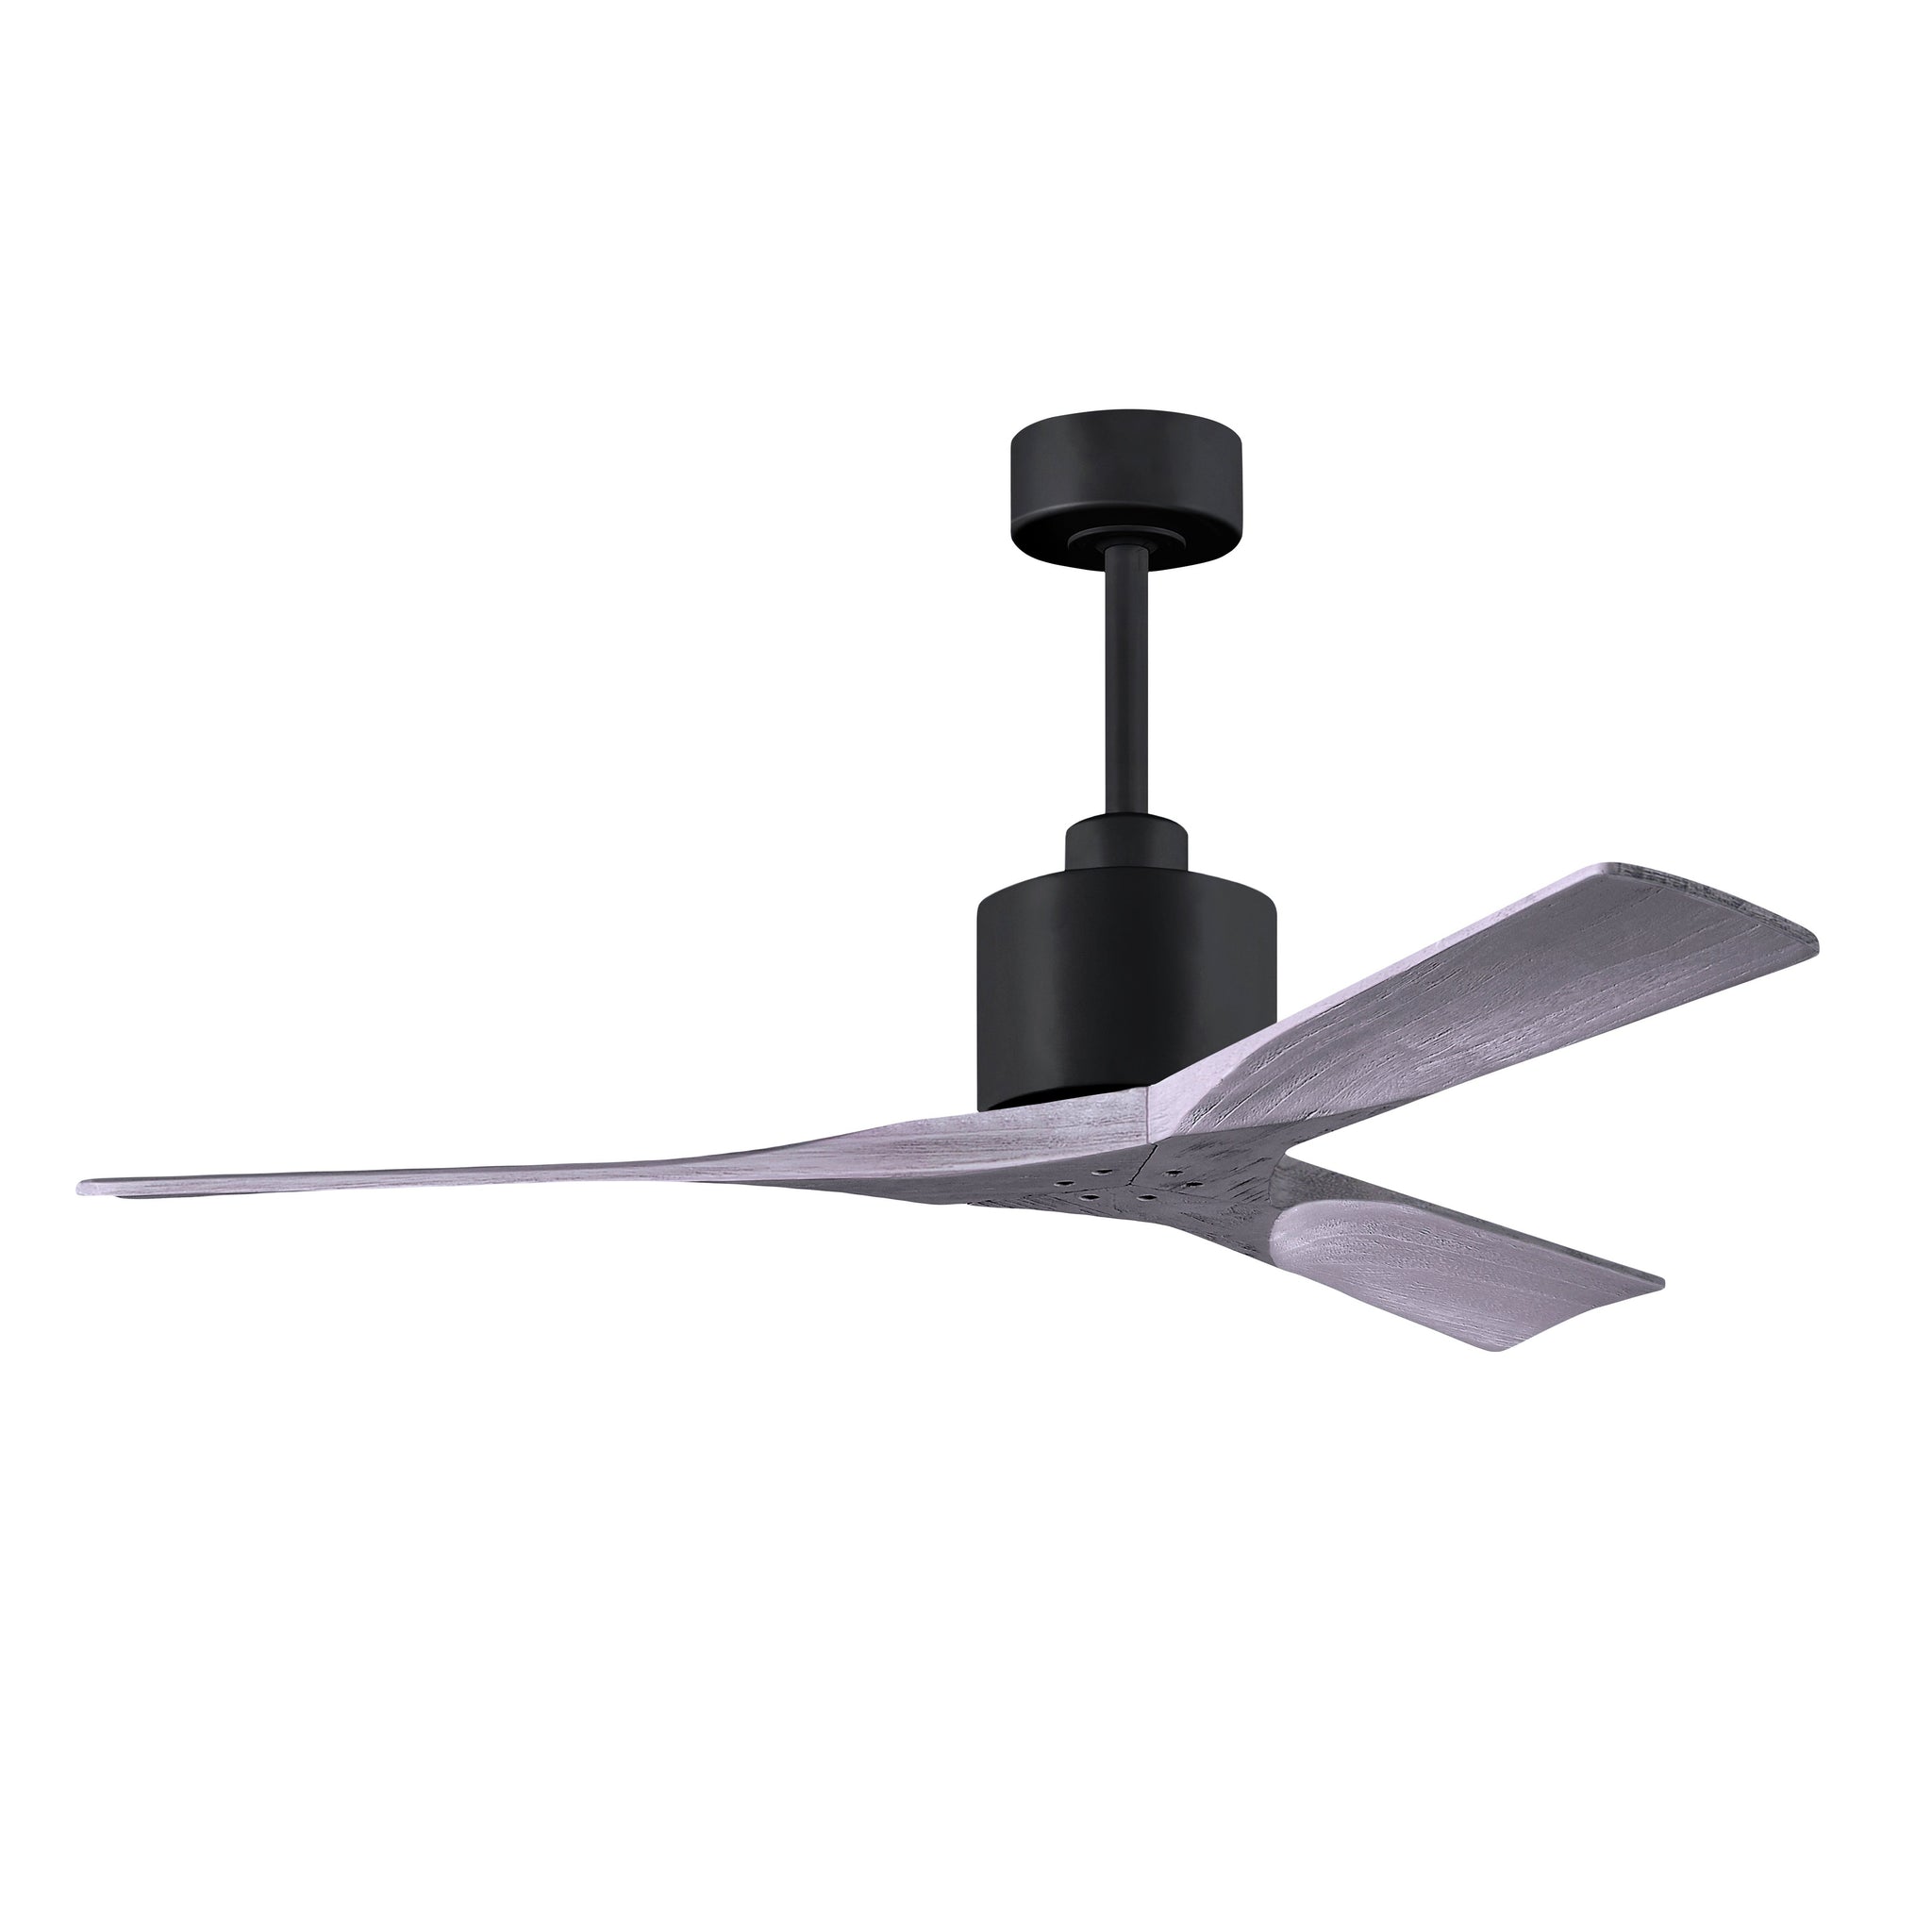 Nan 6-Speed Ceiling Fan in Wood Blades